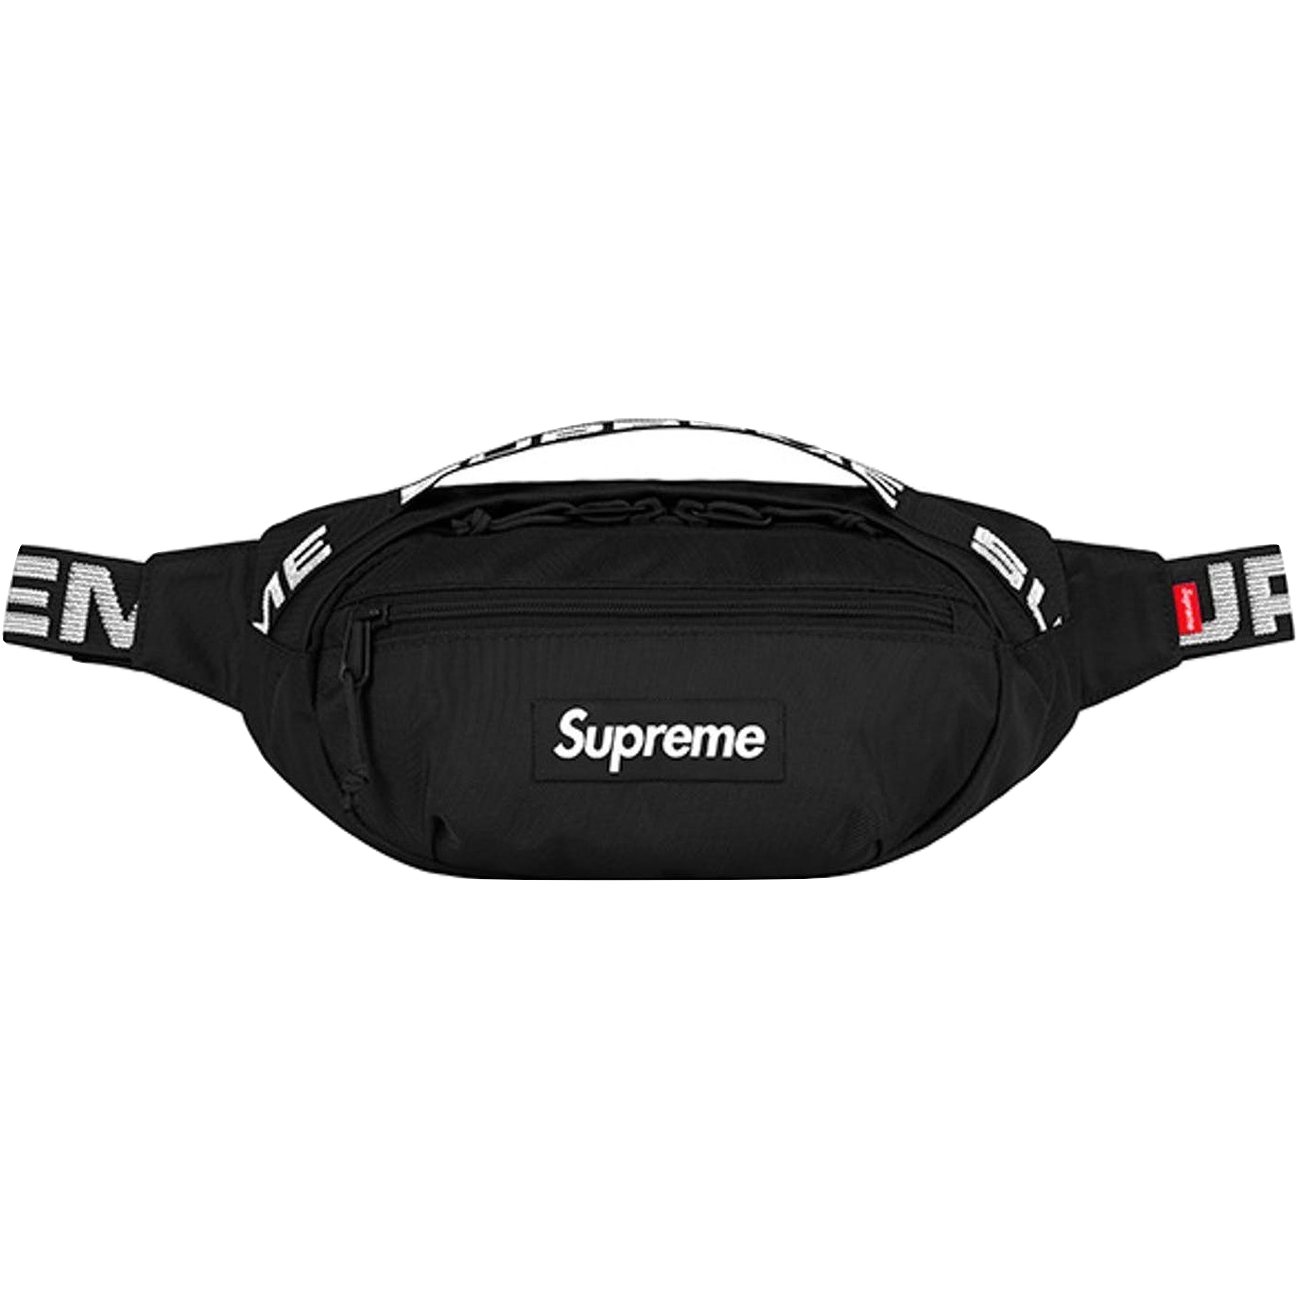 Supreme Waist Bag - Black SS18 - Used